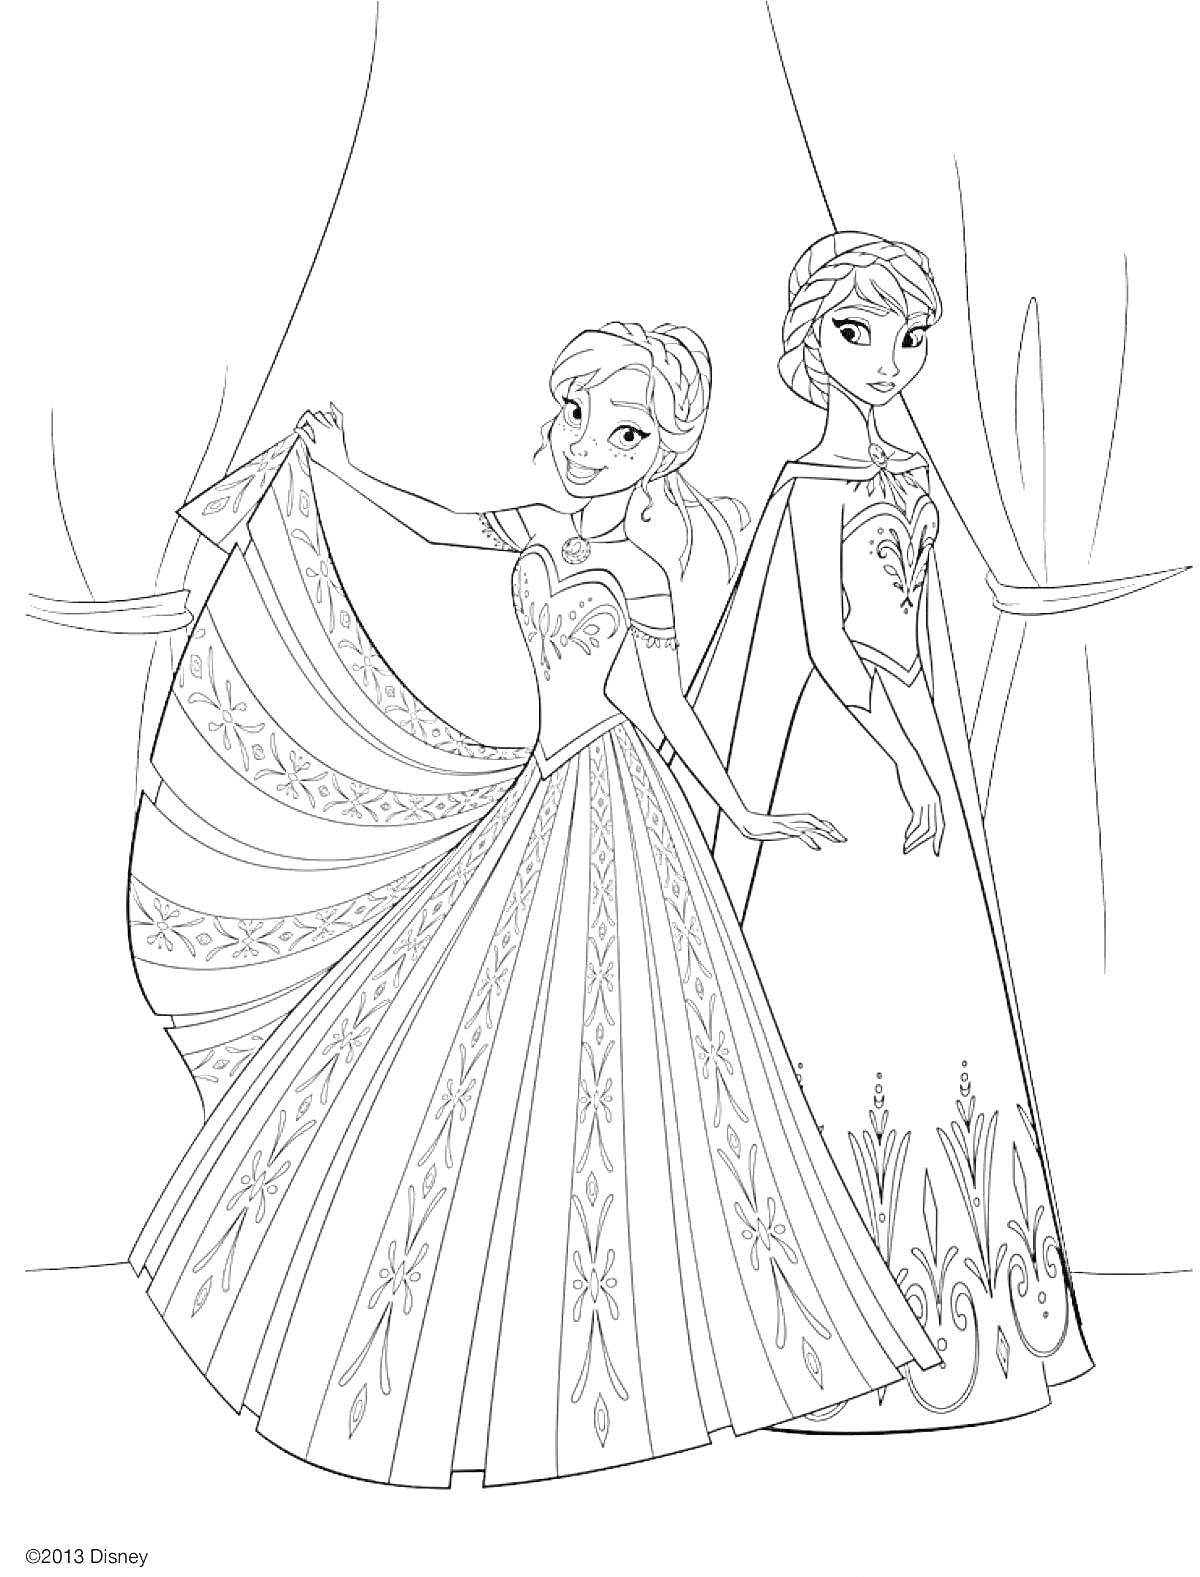 Раскраска Две принцессы в шикарных платьях, одна держит край своего платья, стоят на фоне окон со шторами